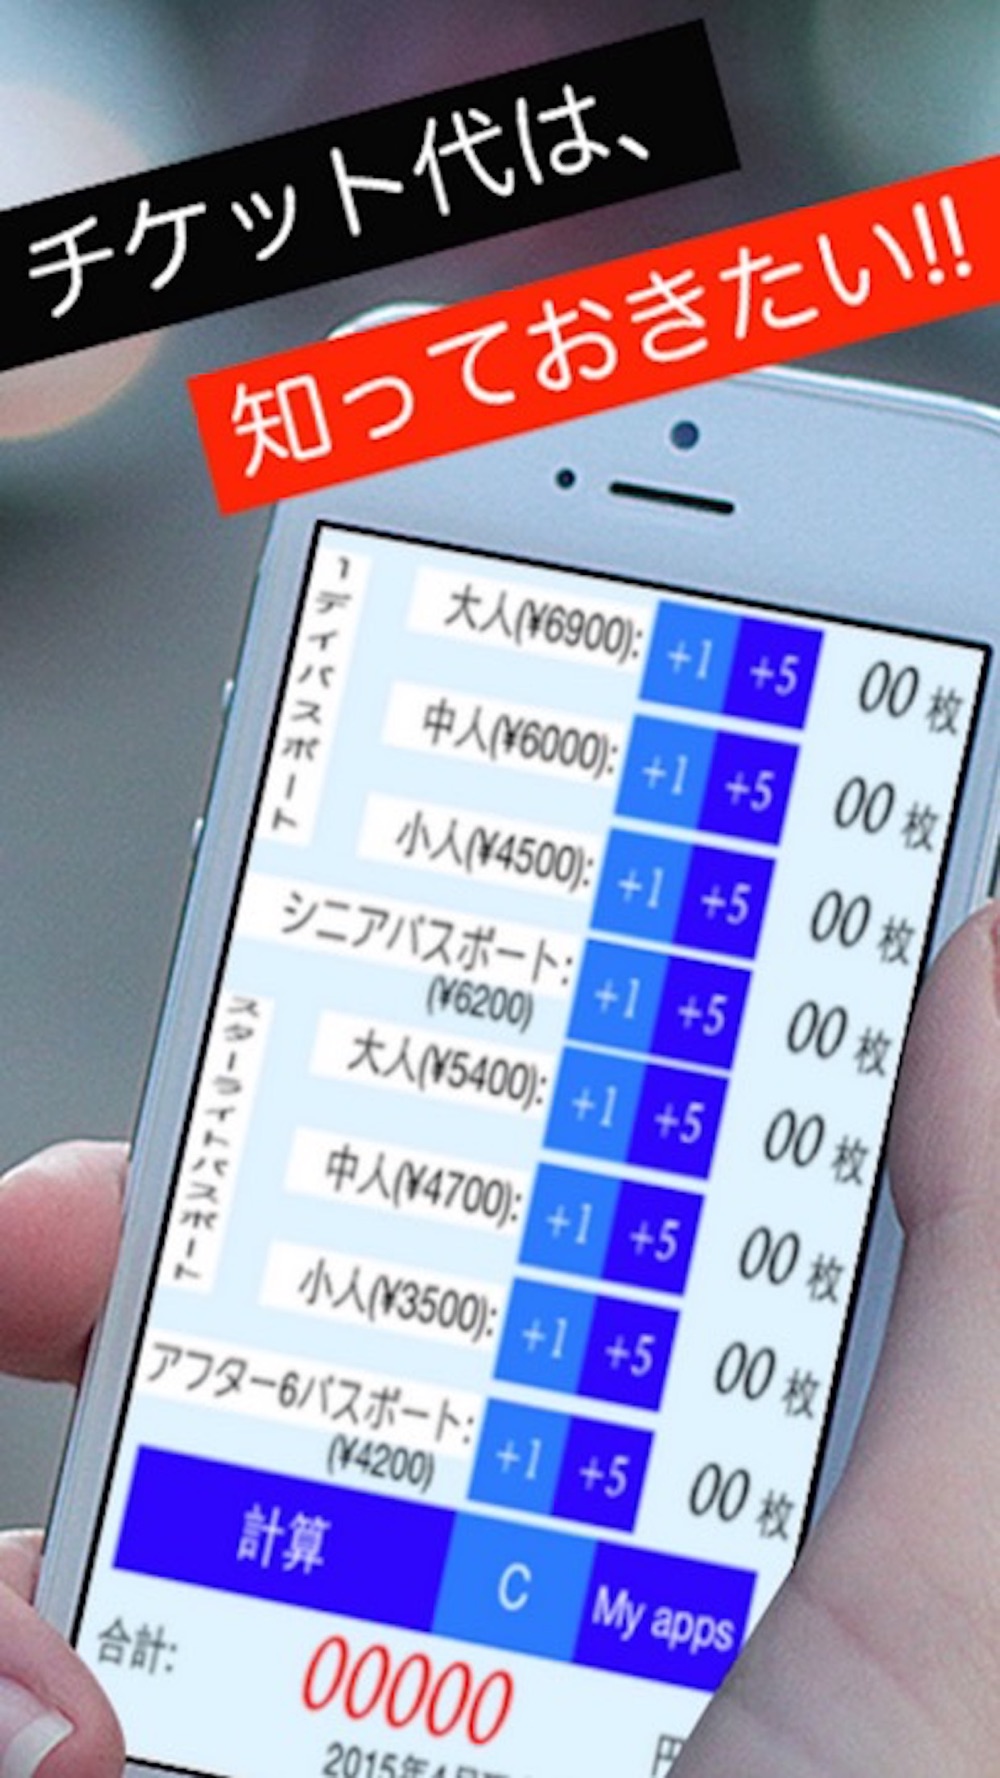 チケット計算アプリfor ディズニー ランド シー Free Download App For Iphone Steprimo Com